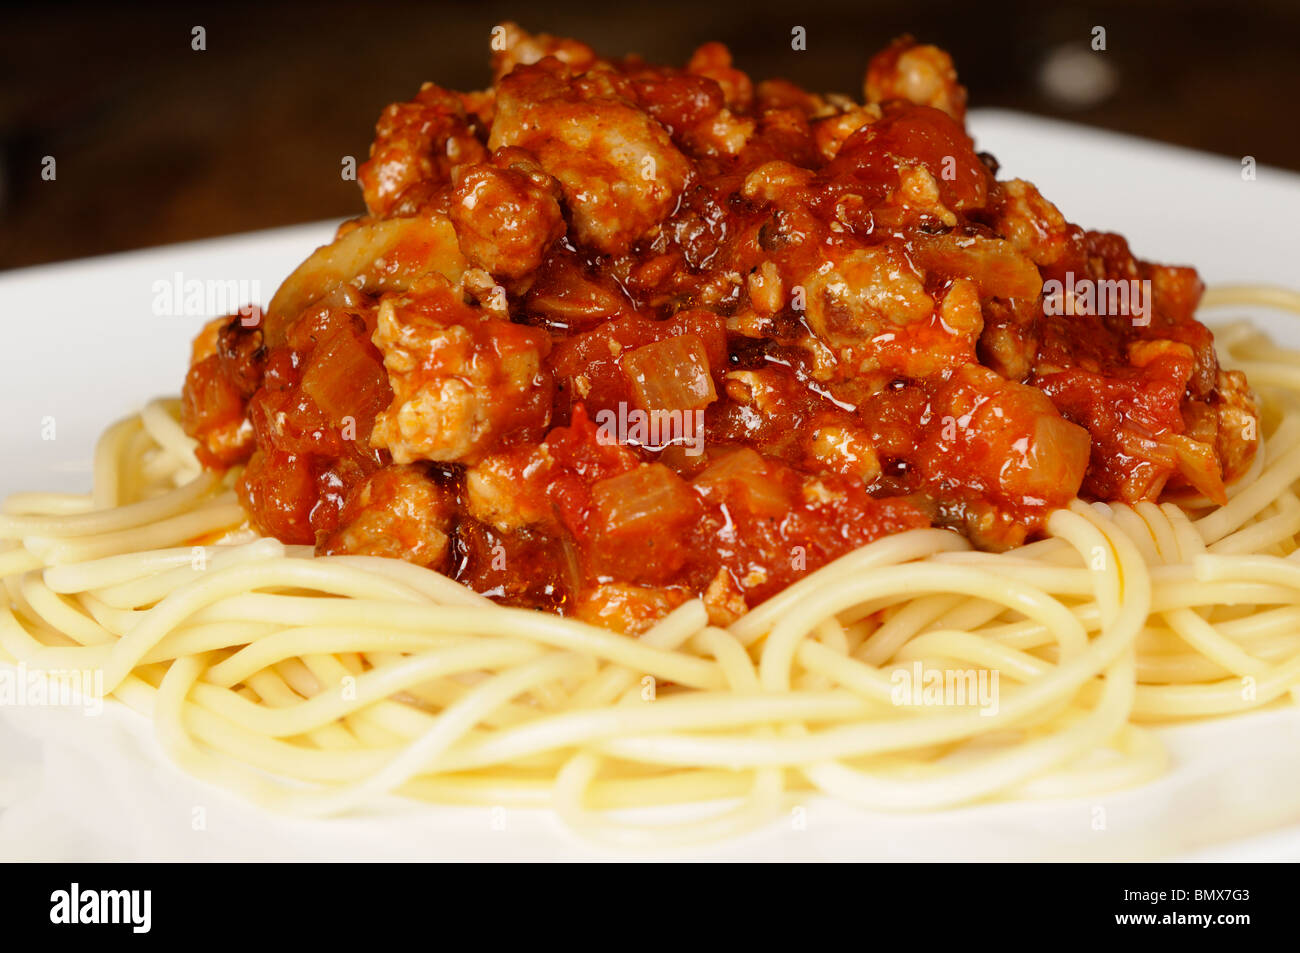 Foto di stock di un maiale in base spaghetti bolognese servita su una piastra bianca. Foto Stock